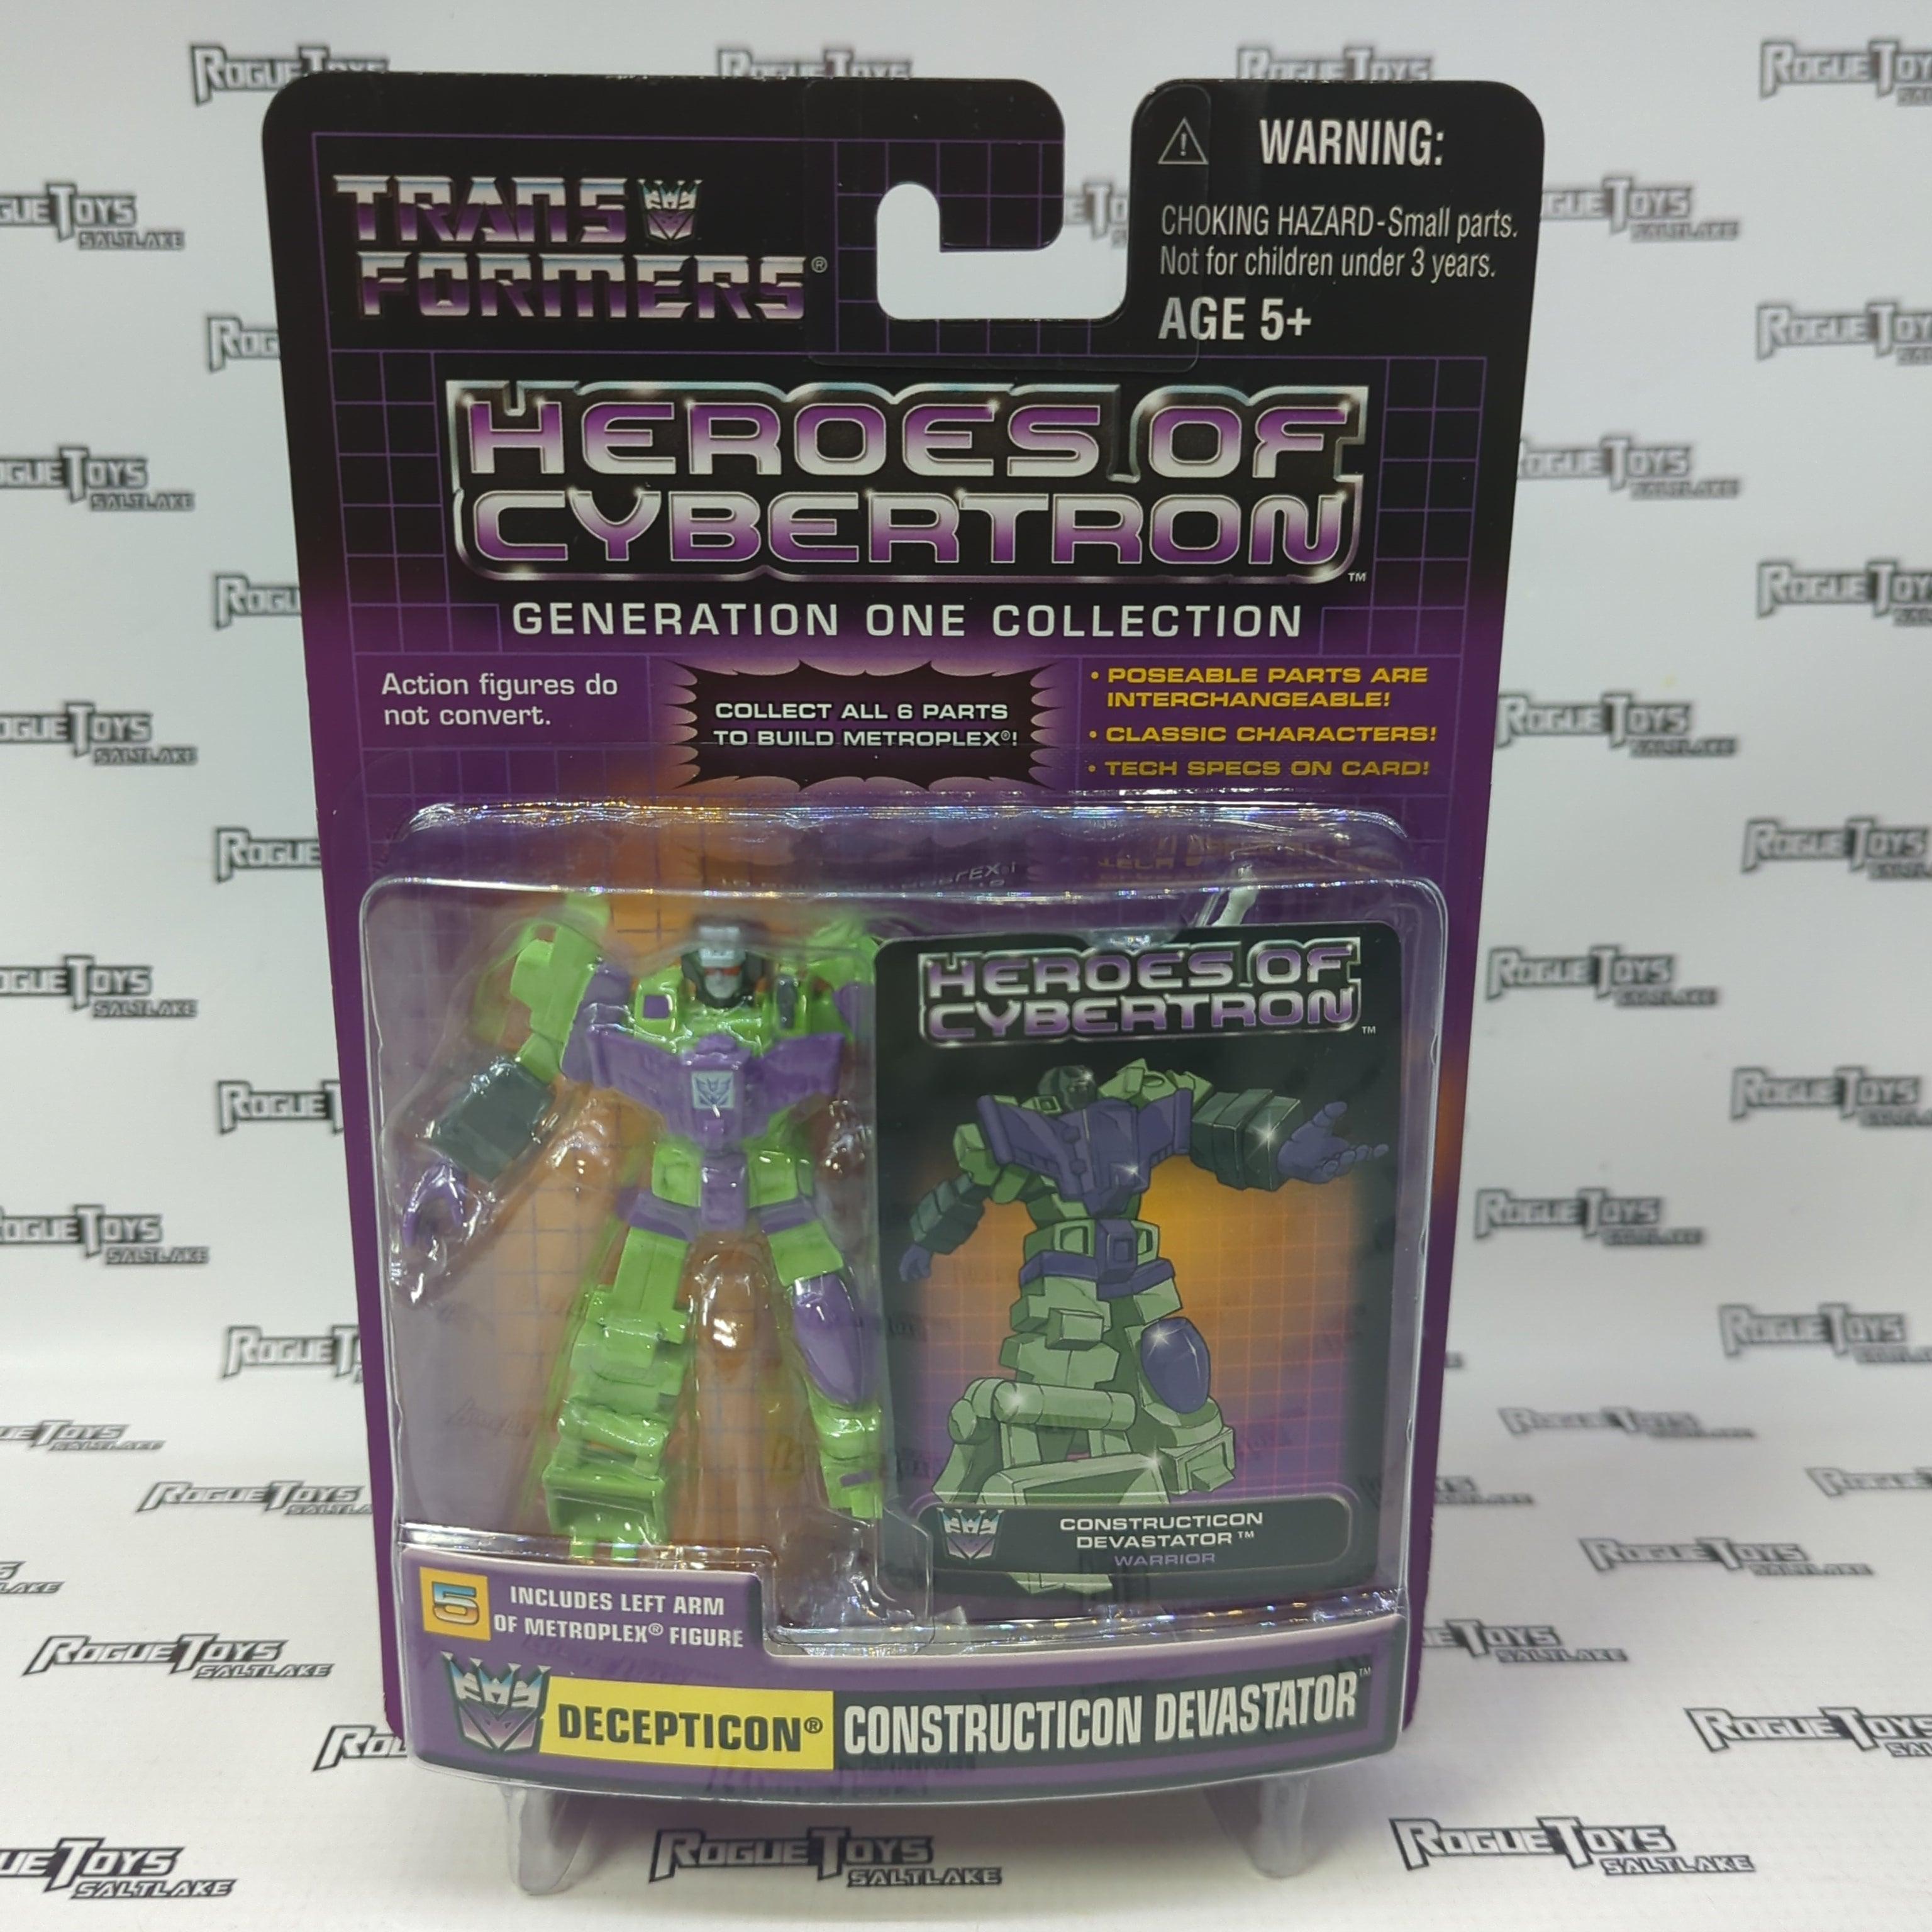 Hasbro Transformers Heroes of Cybertron Generation One Collection Decepticon Constructicon Devastator